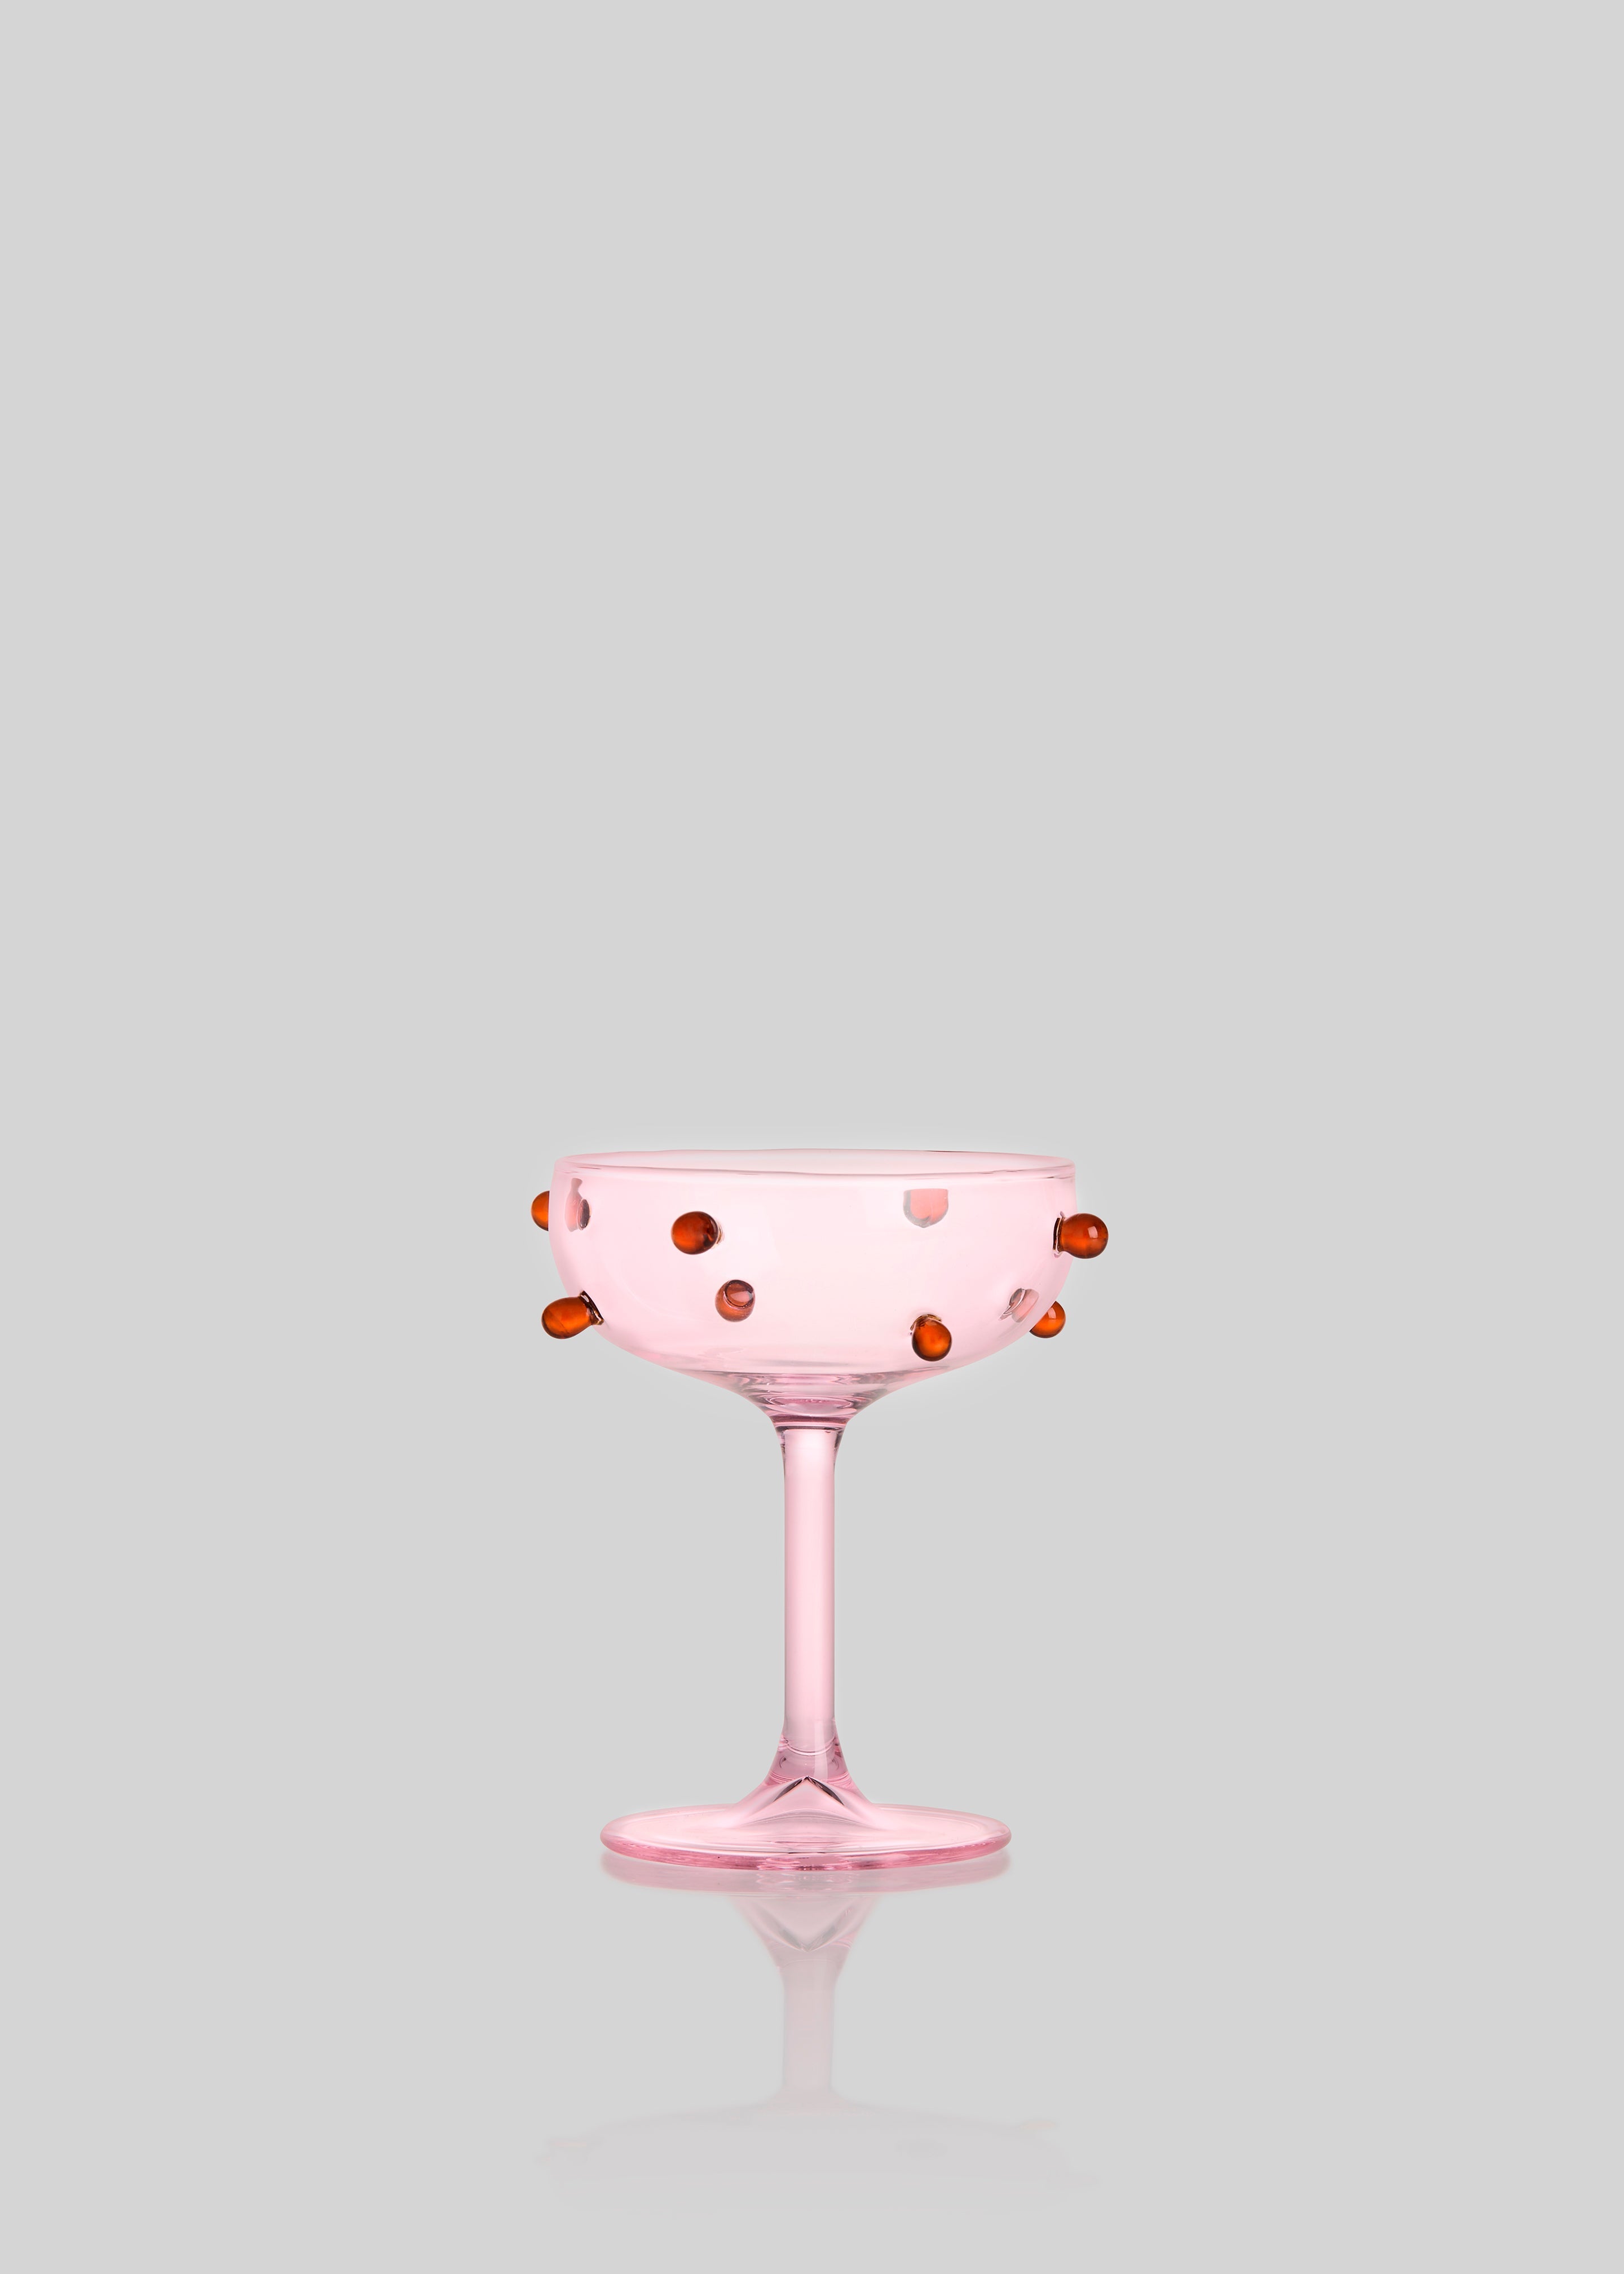 Maison Balzac 2 Champagne Coupes - Pink & Amber - 3